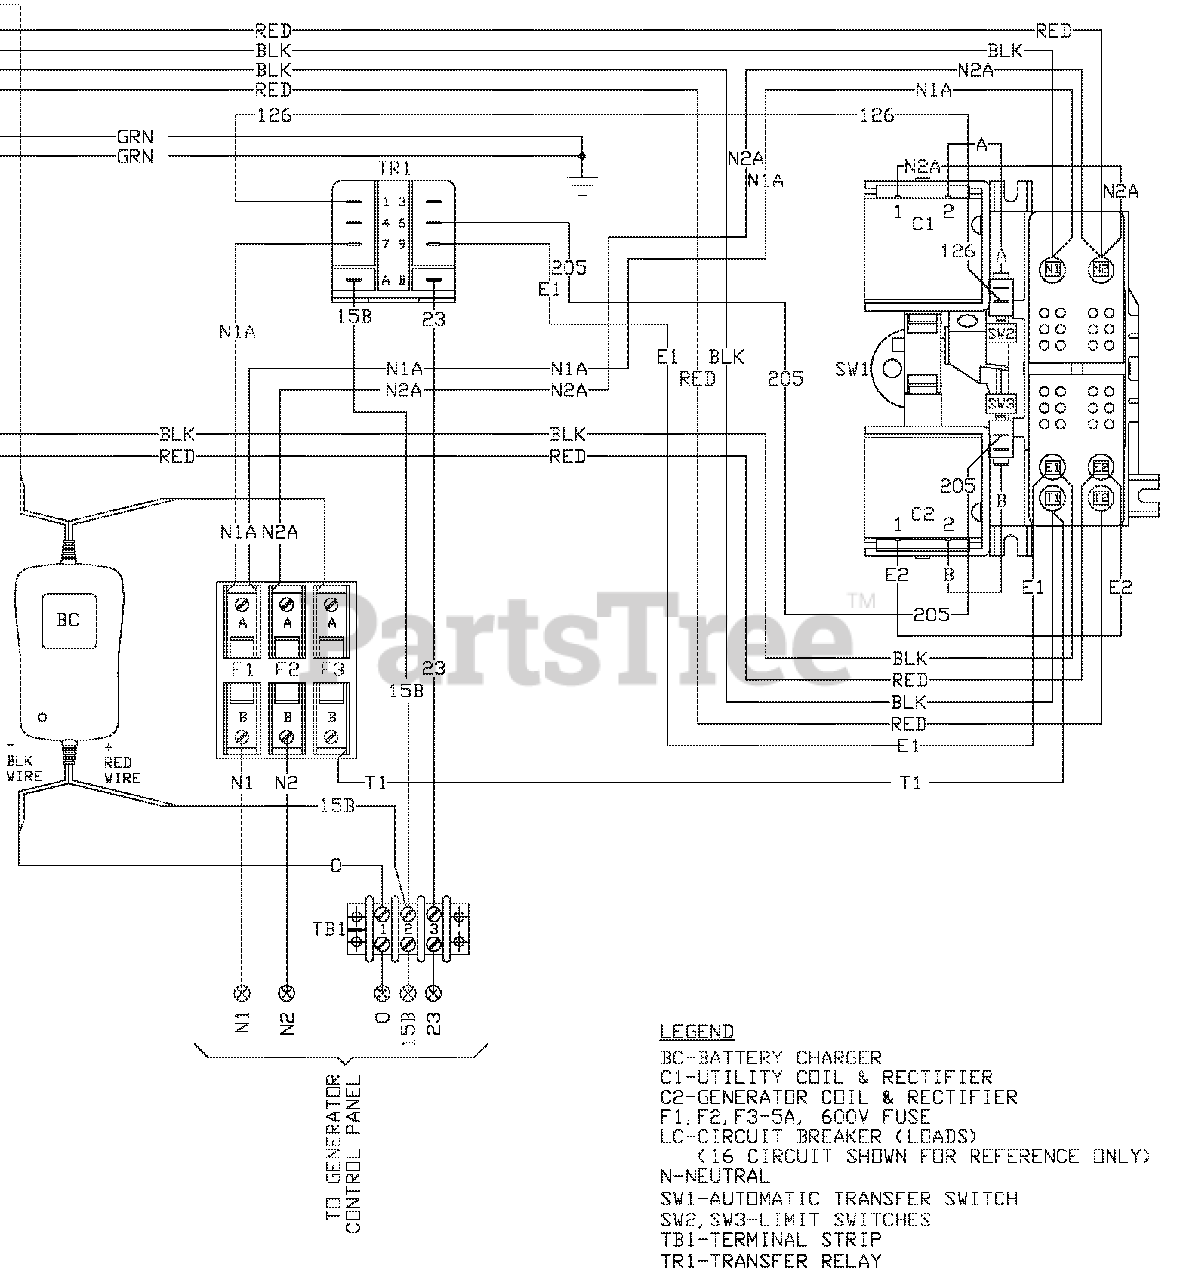 29 Generac Transfer Switch Wiring Diagram - Wiring Database 2020